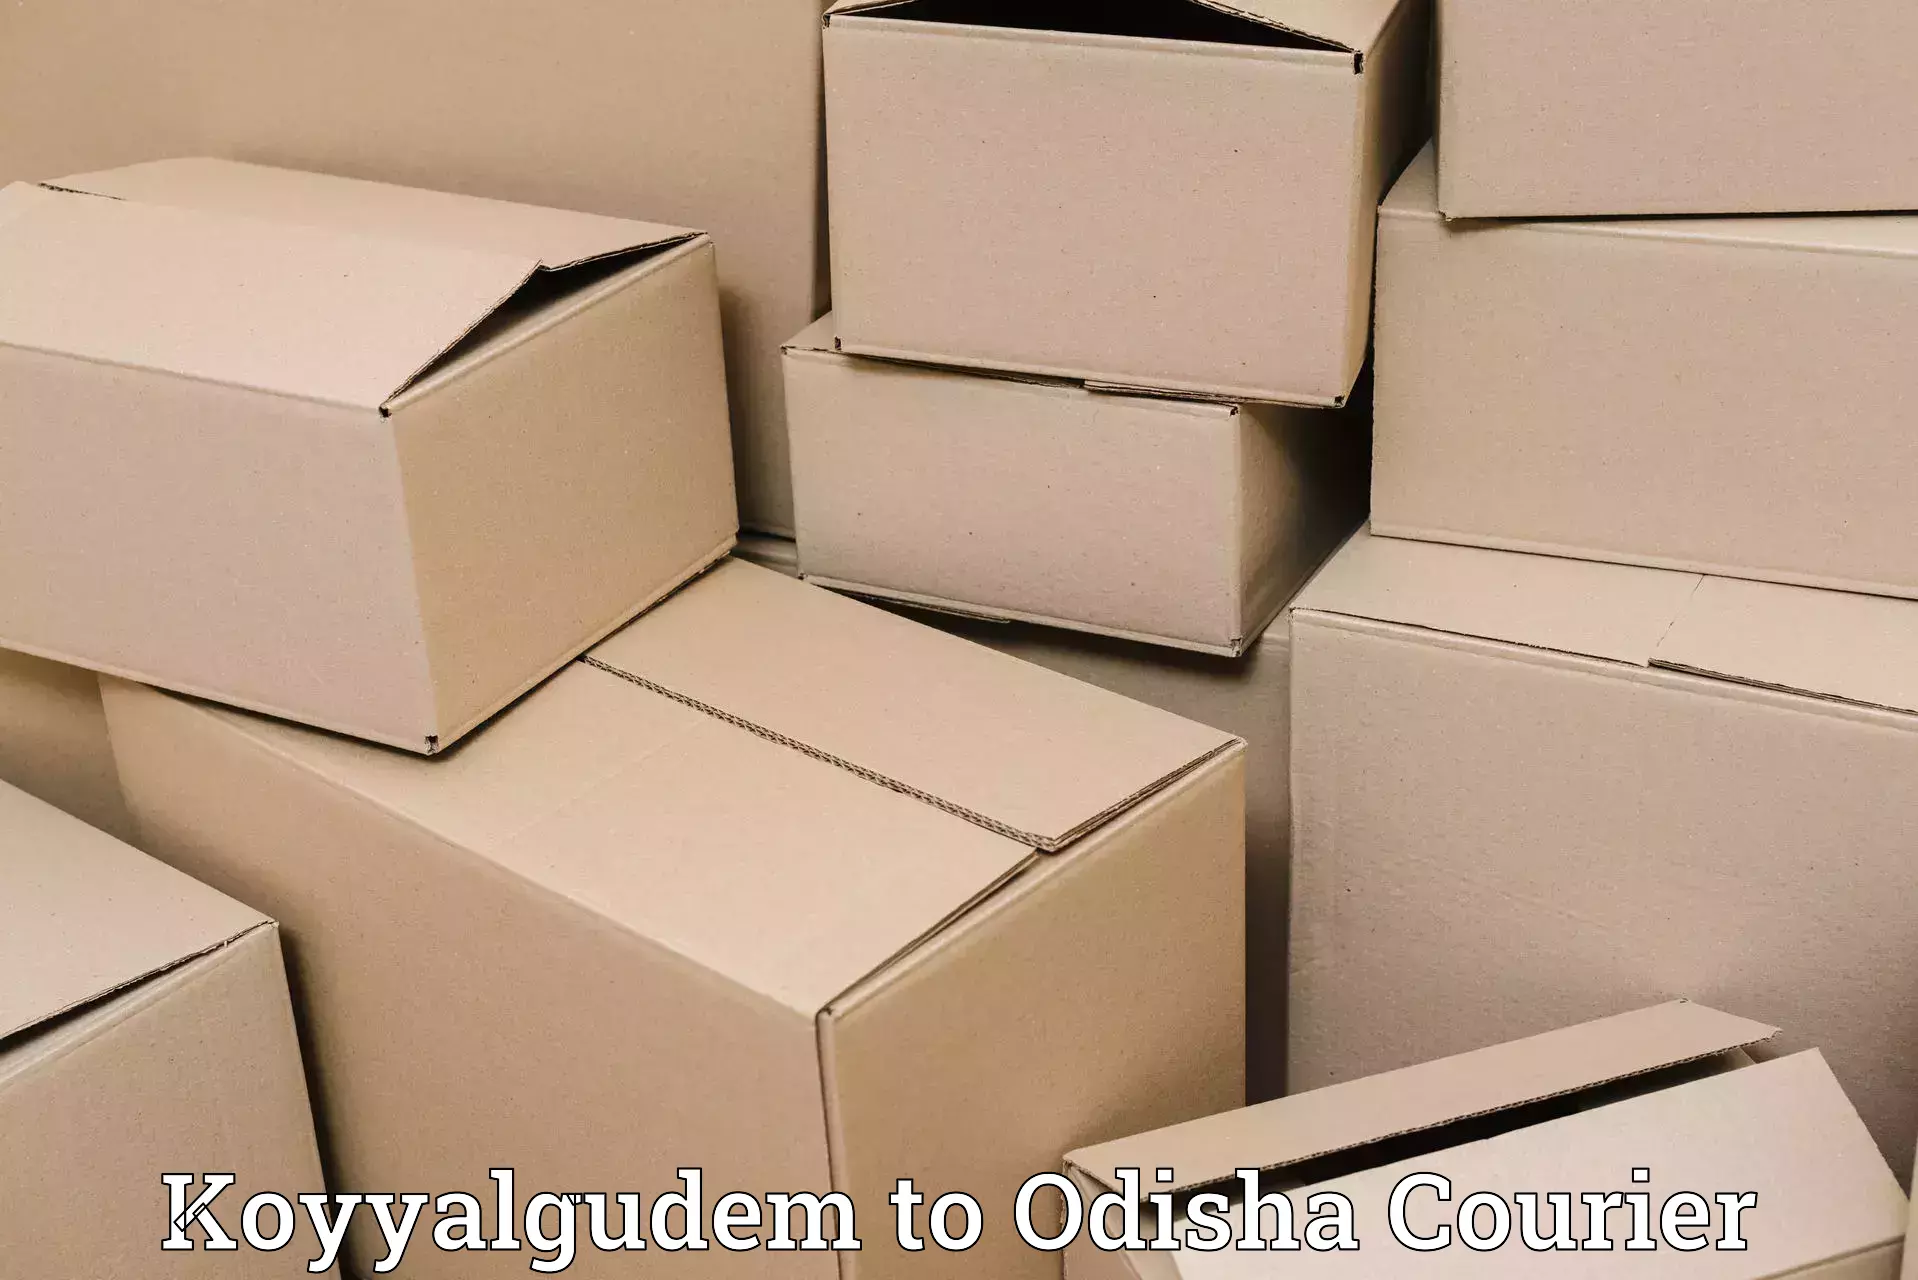 Easy access courier services Koyyalgudem to Dukura